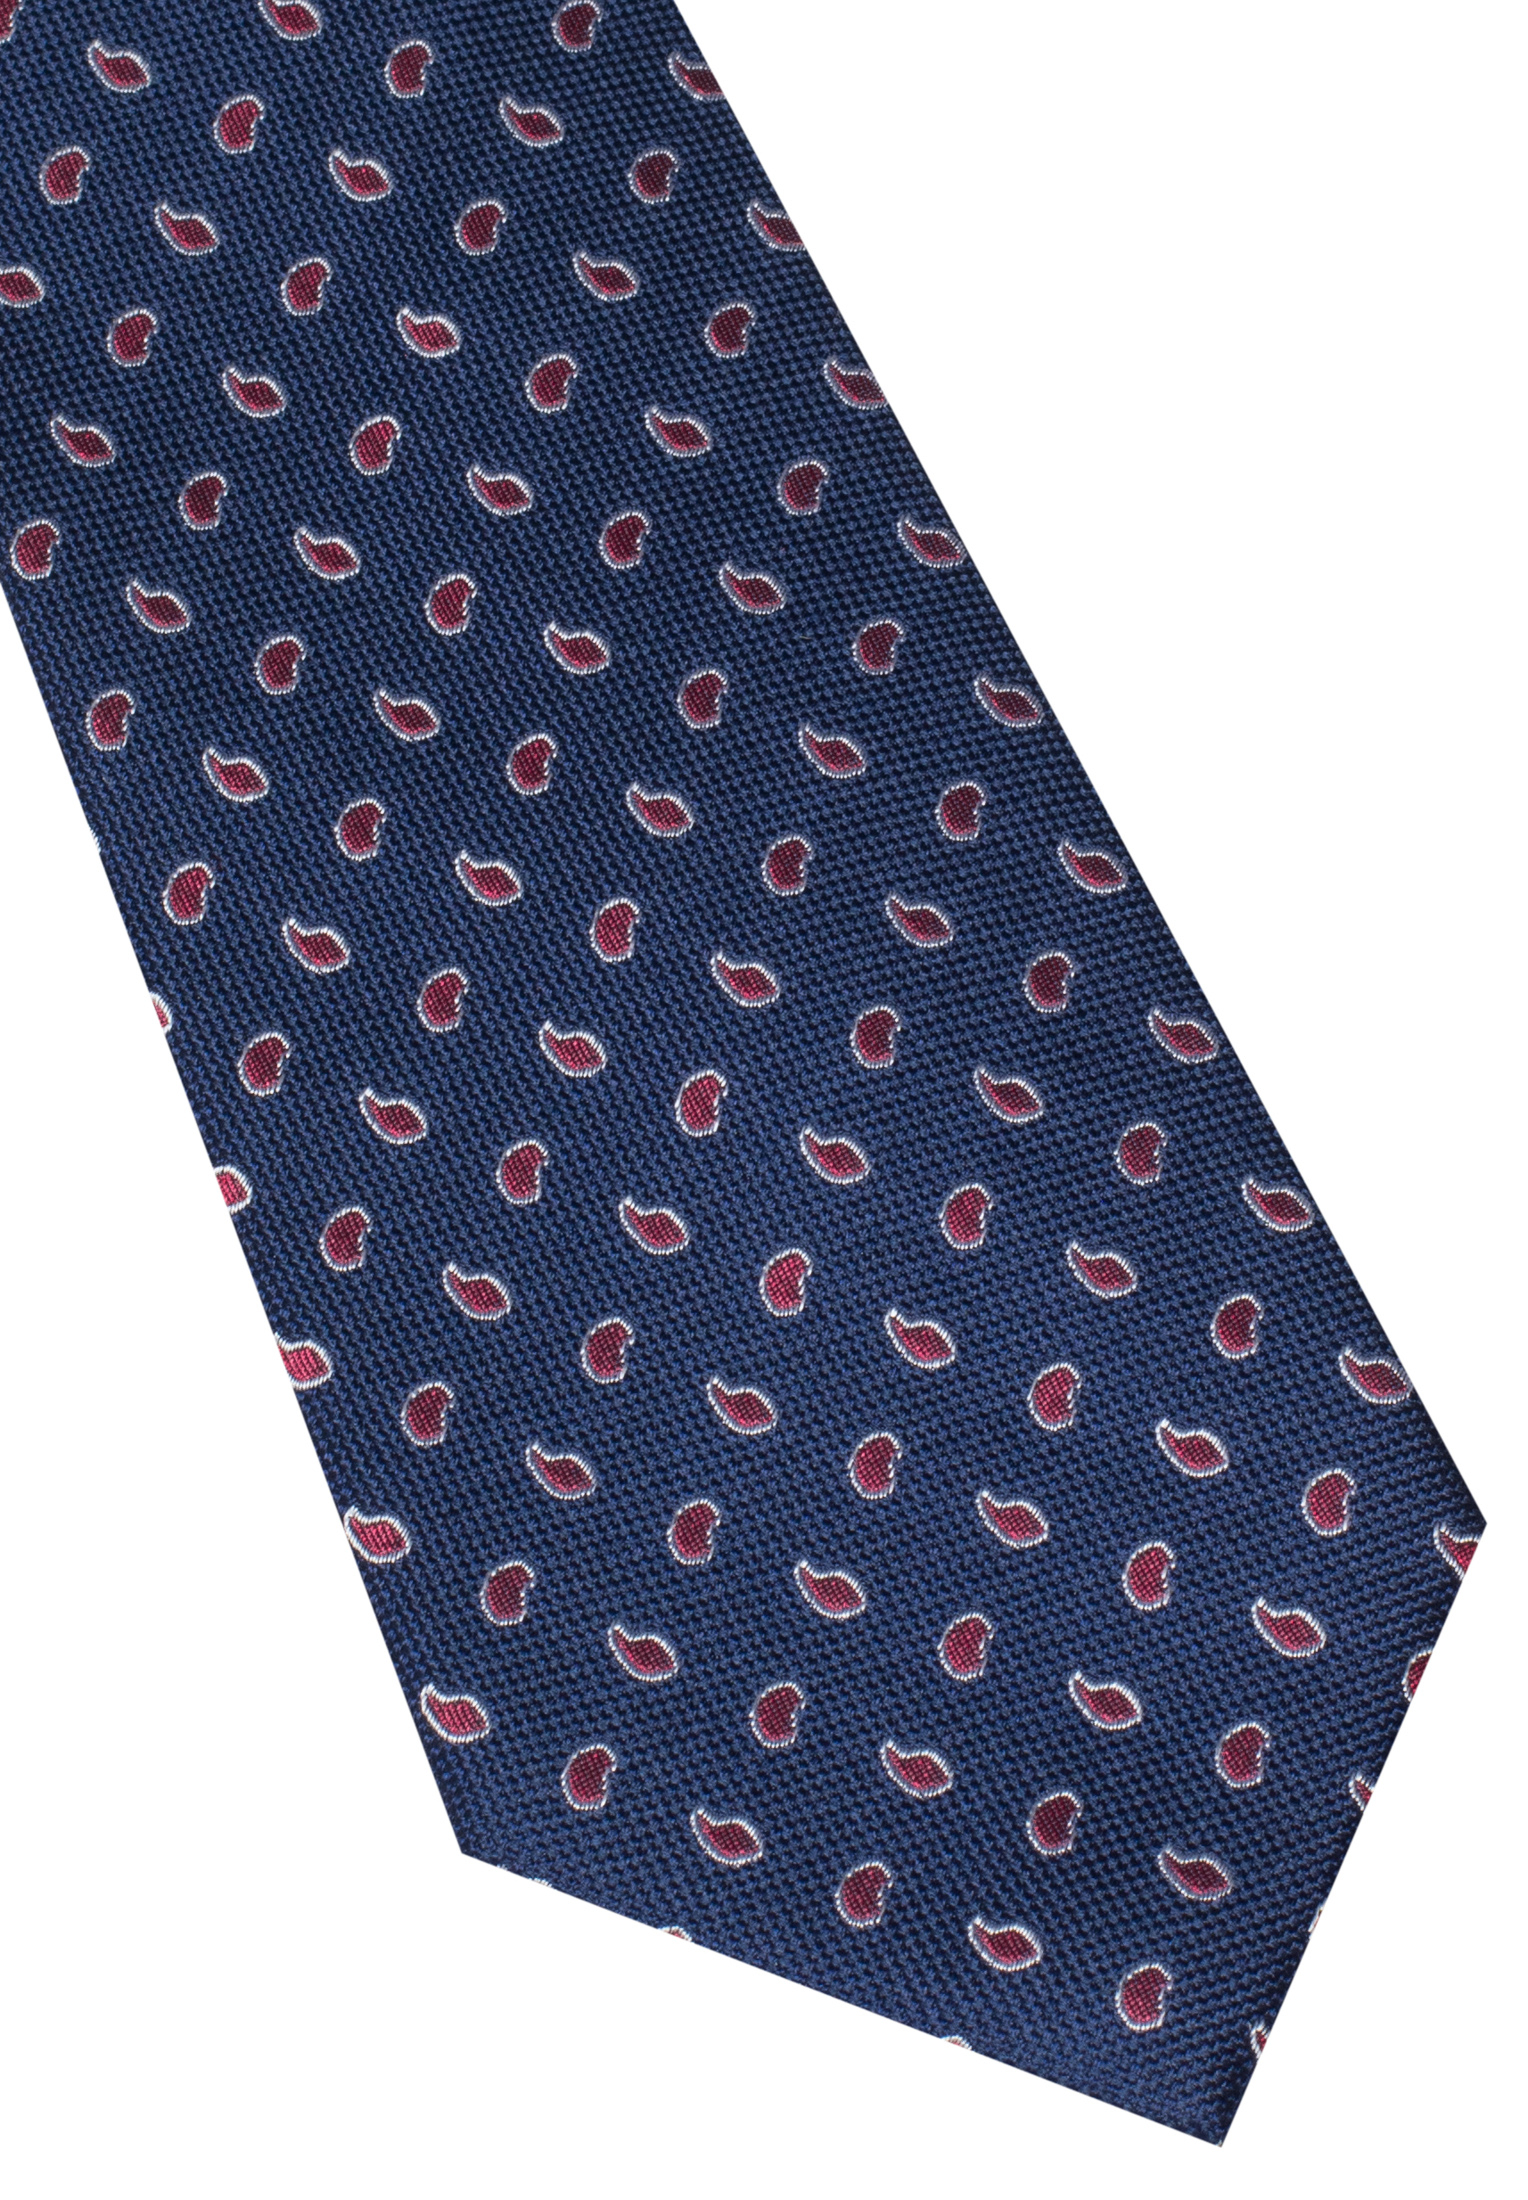 Cravate bleu marine/rouge estampé